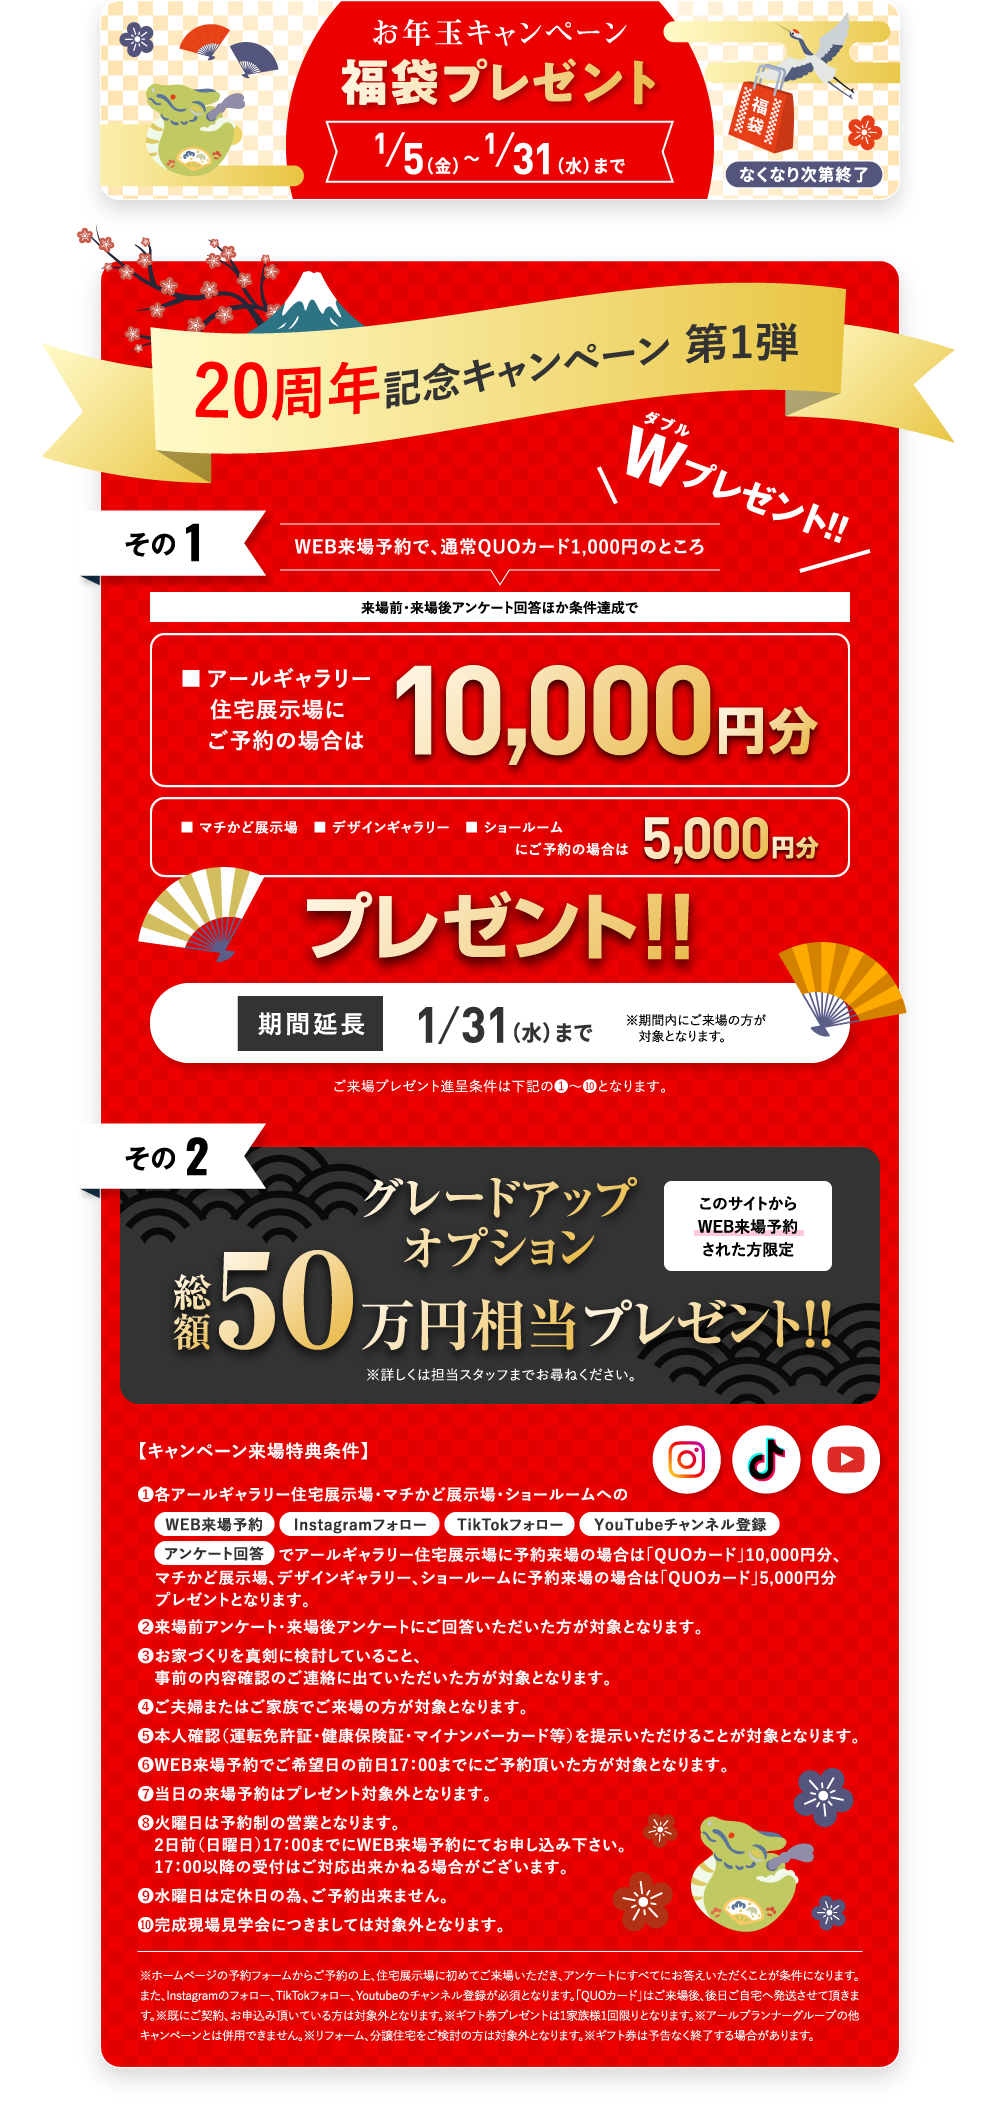 新春ハウジングフェア QUOカード2,000円分プレゼント